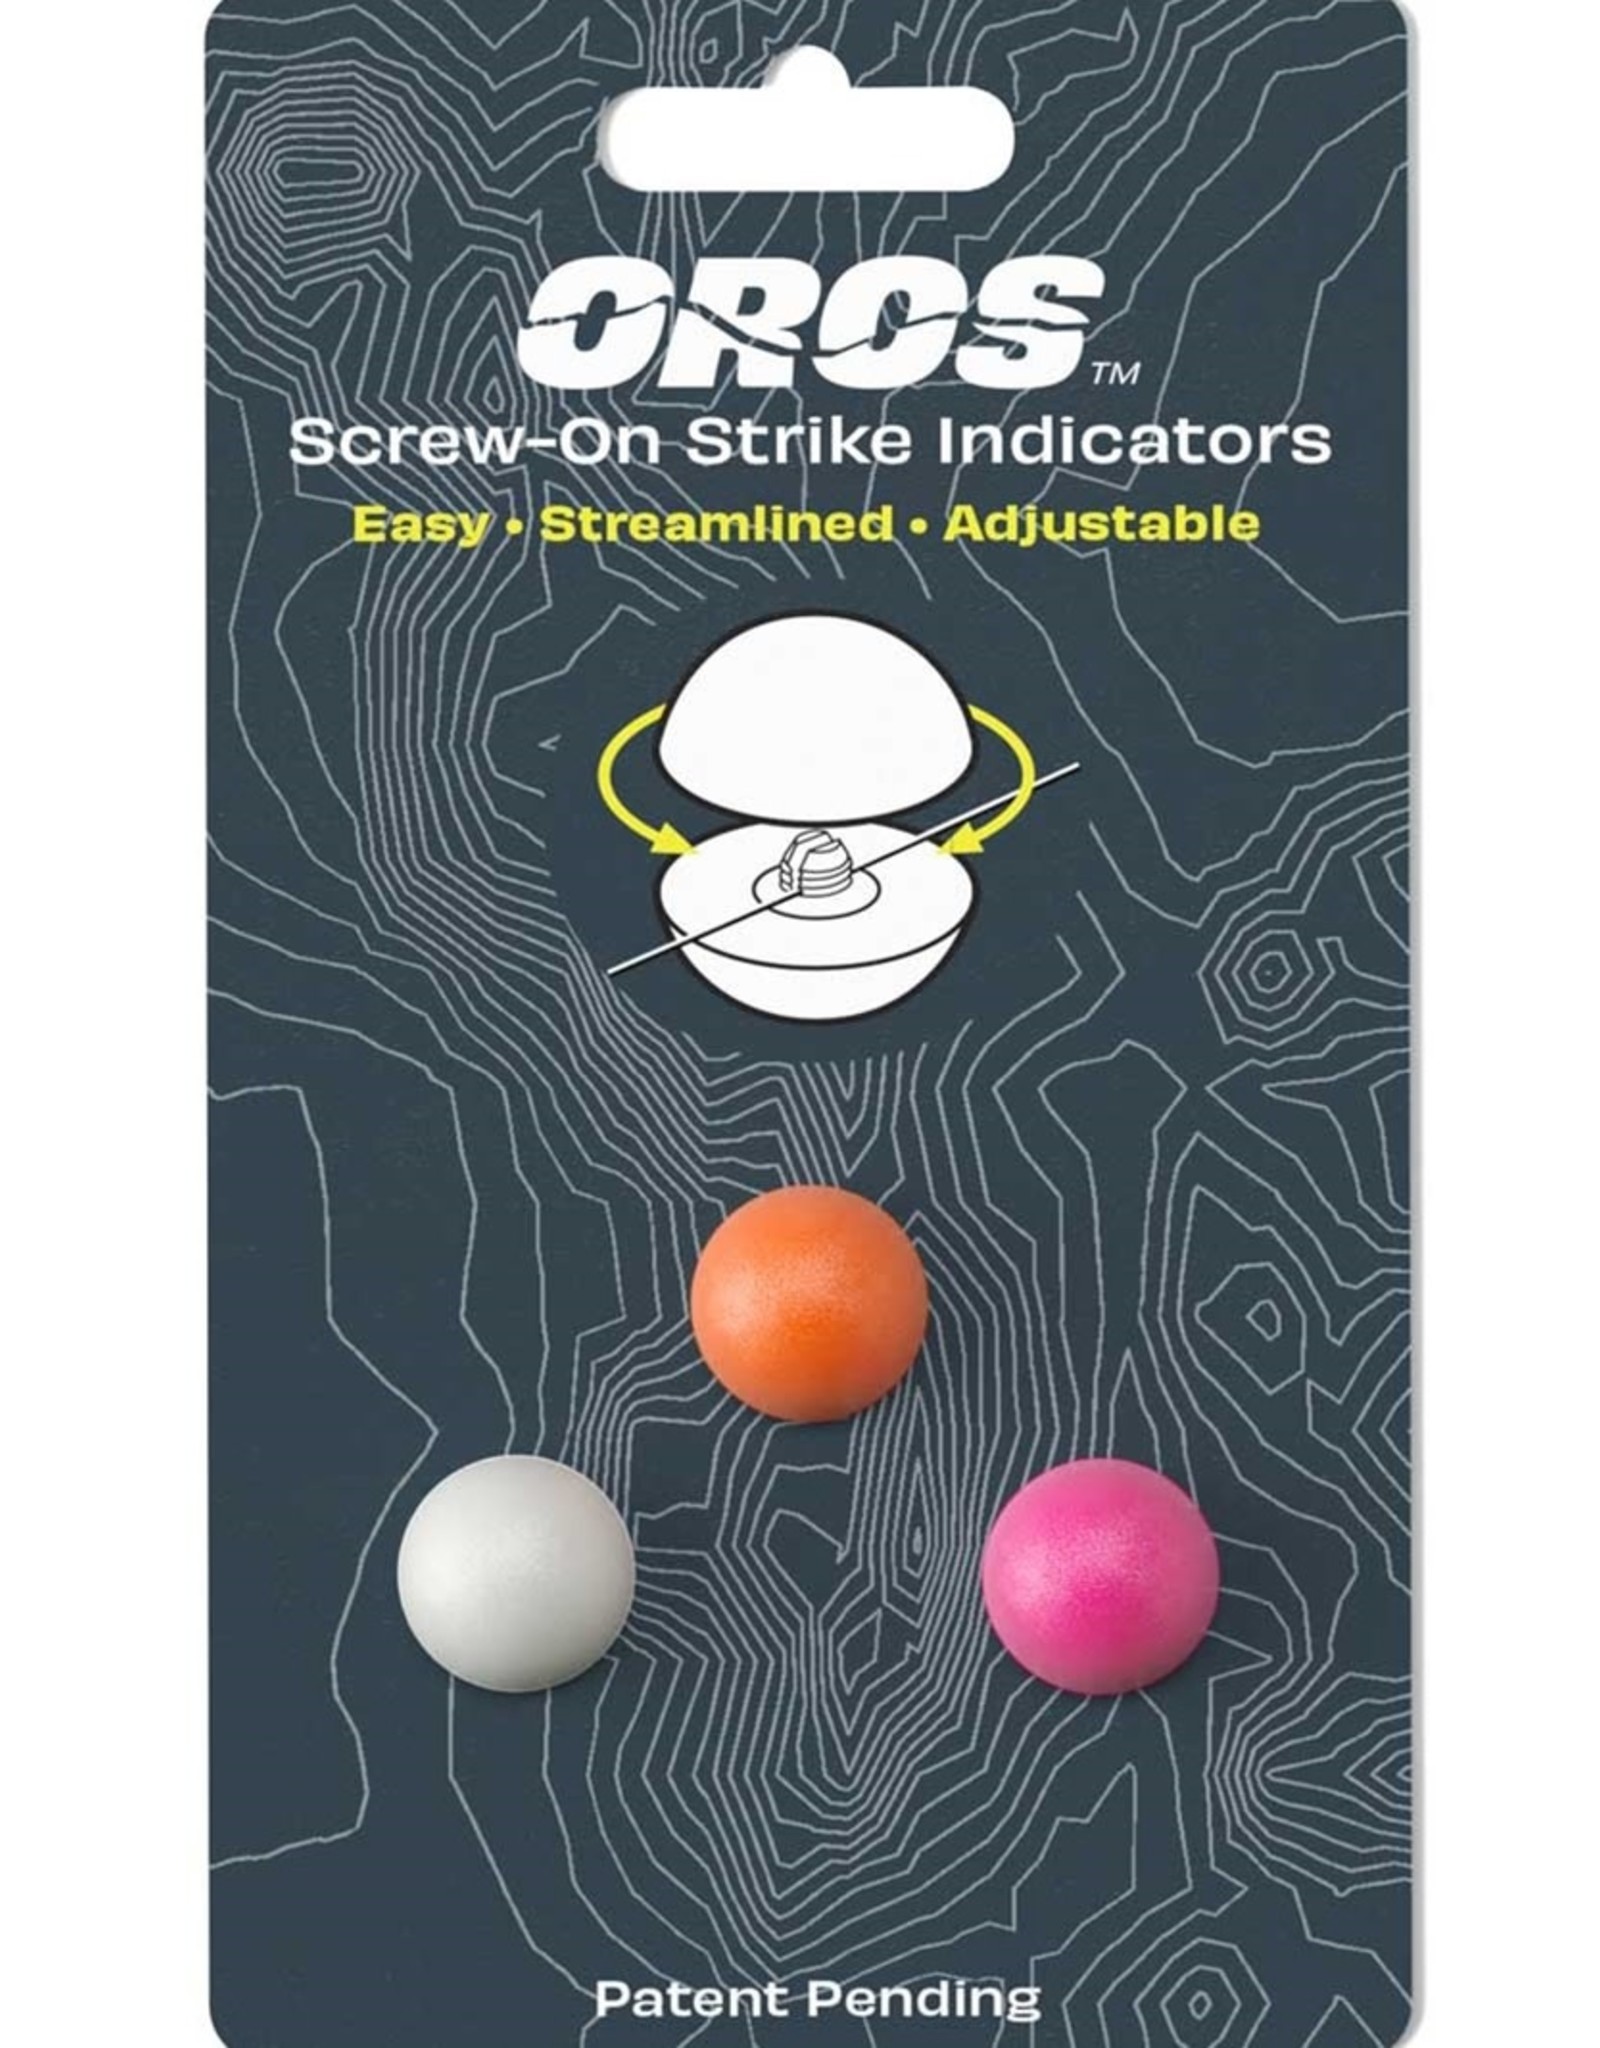 Oros Oros Strike Indicators Medium Multicolor (3pk)